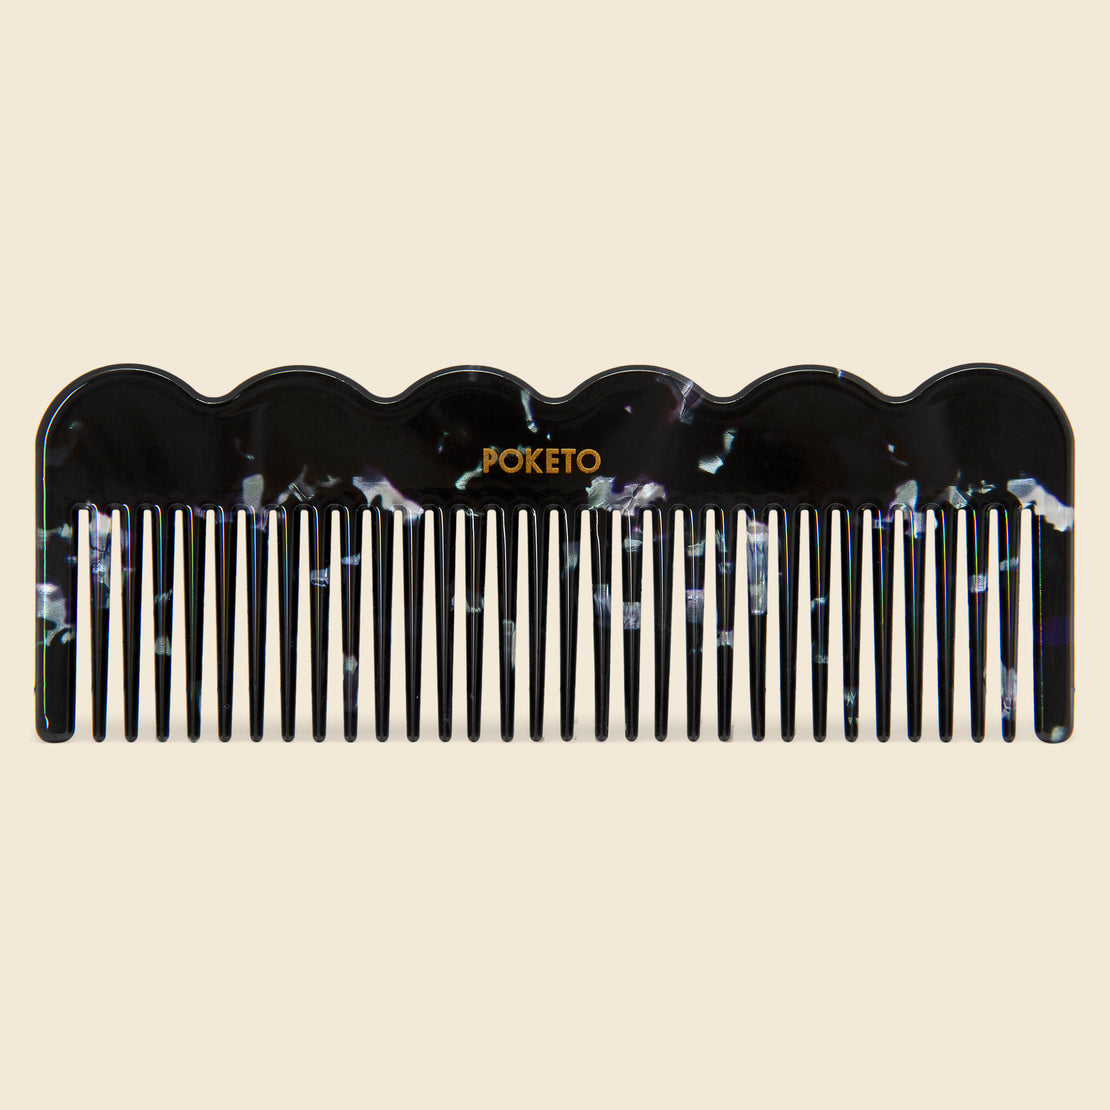 Poketo Wave Comb - Black